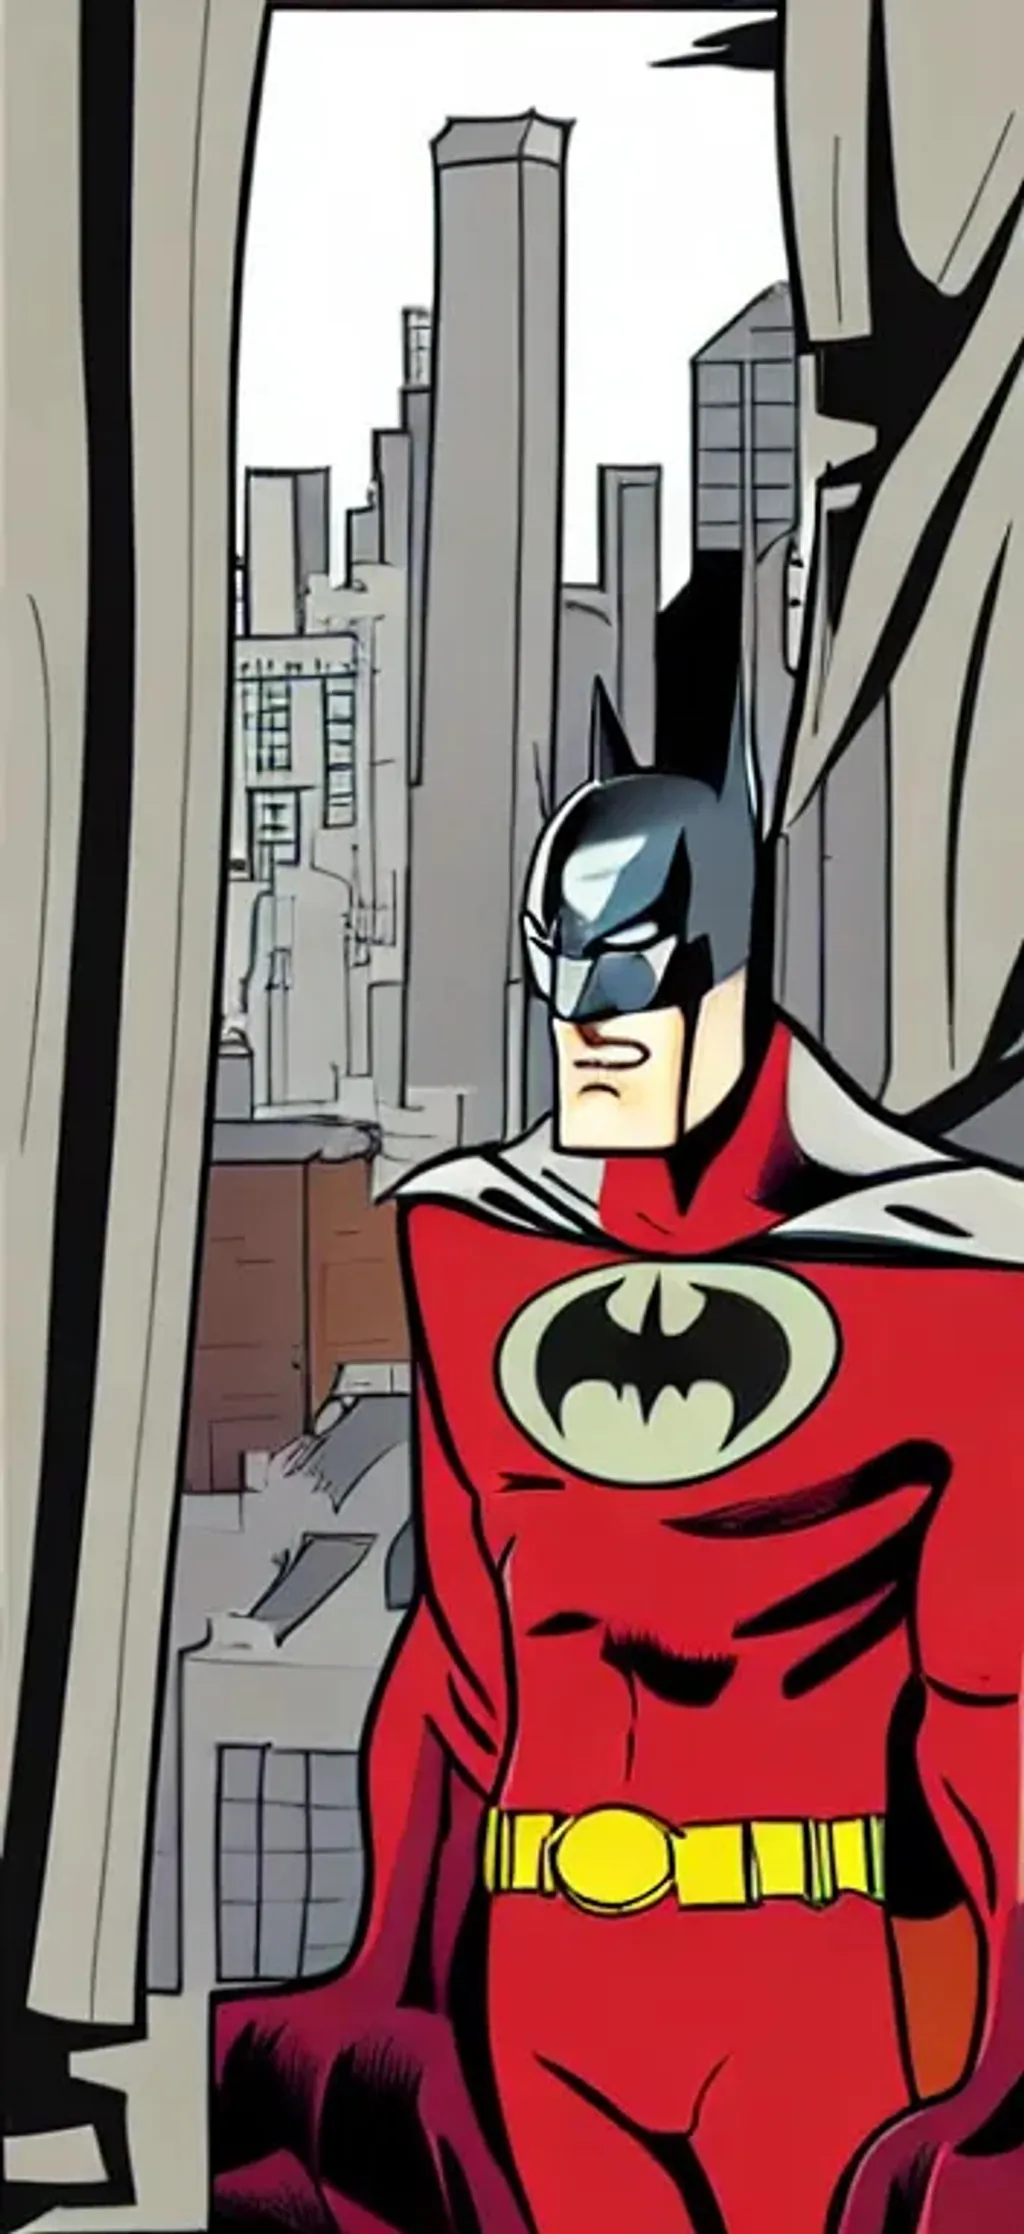 Prompt: batman, cartoon, comic cover
